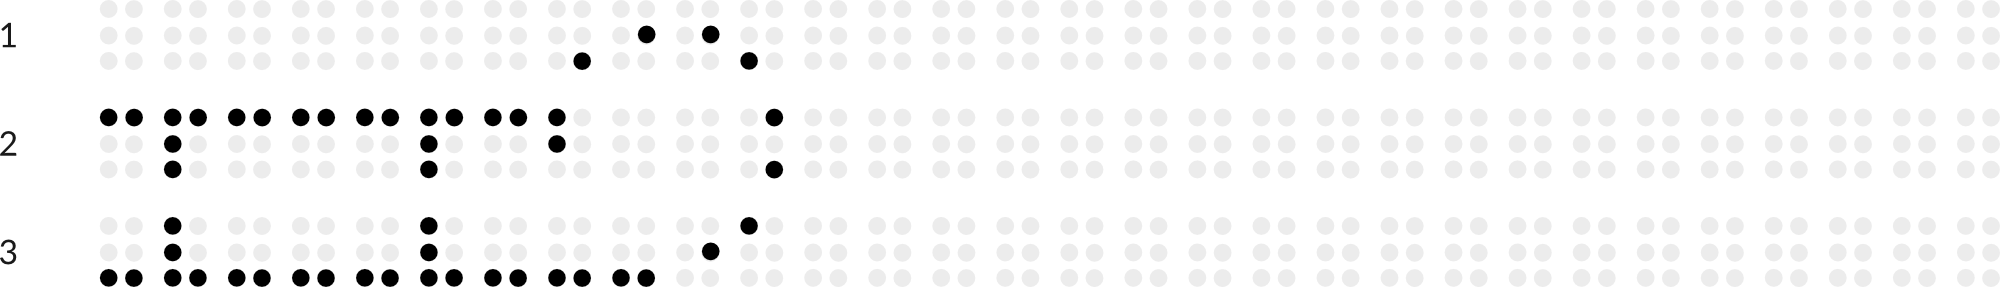 Braillebild mit Raster: Schlitten